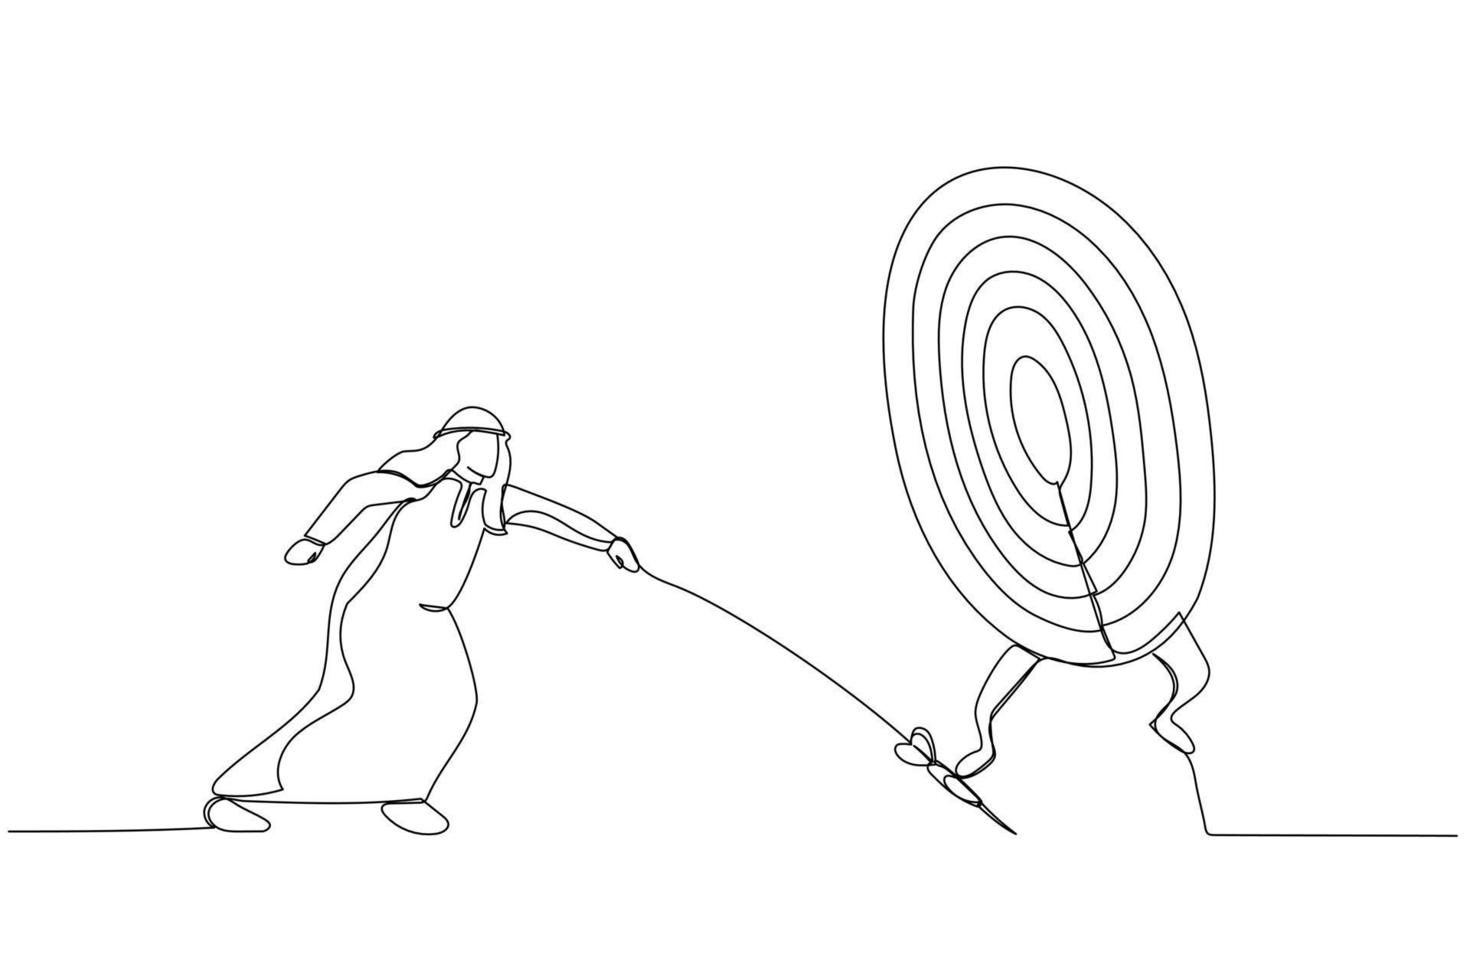 Desenho de empresário ambicioso na escada usando rolo de pintura para pintar  alvo de tiro com arco grande alvo de dardos metáfora para objetivo objetivo  objetivo kpi indicador de desempenho chave objetivo